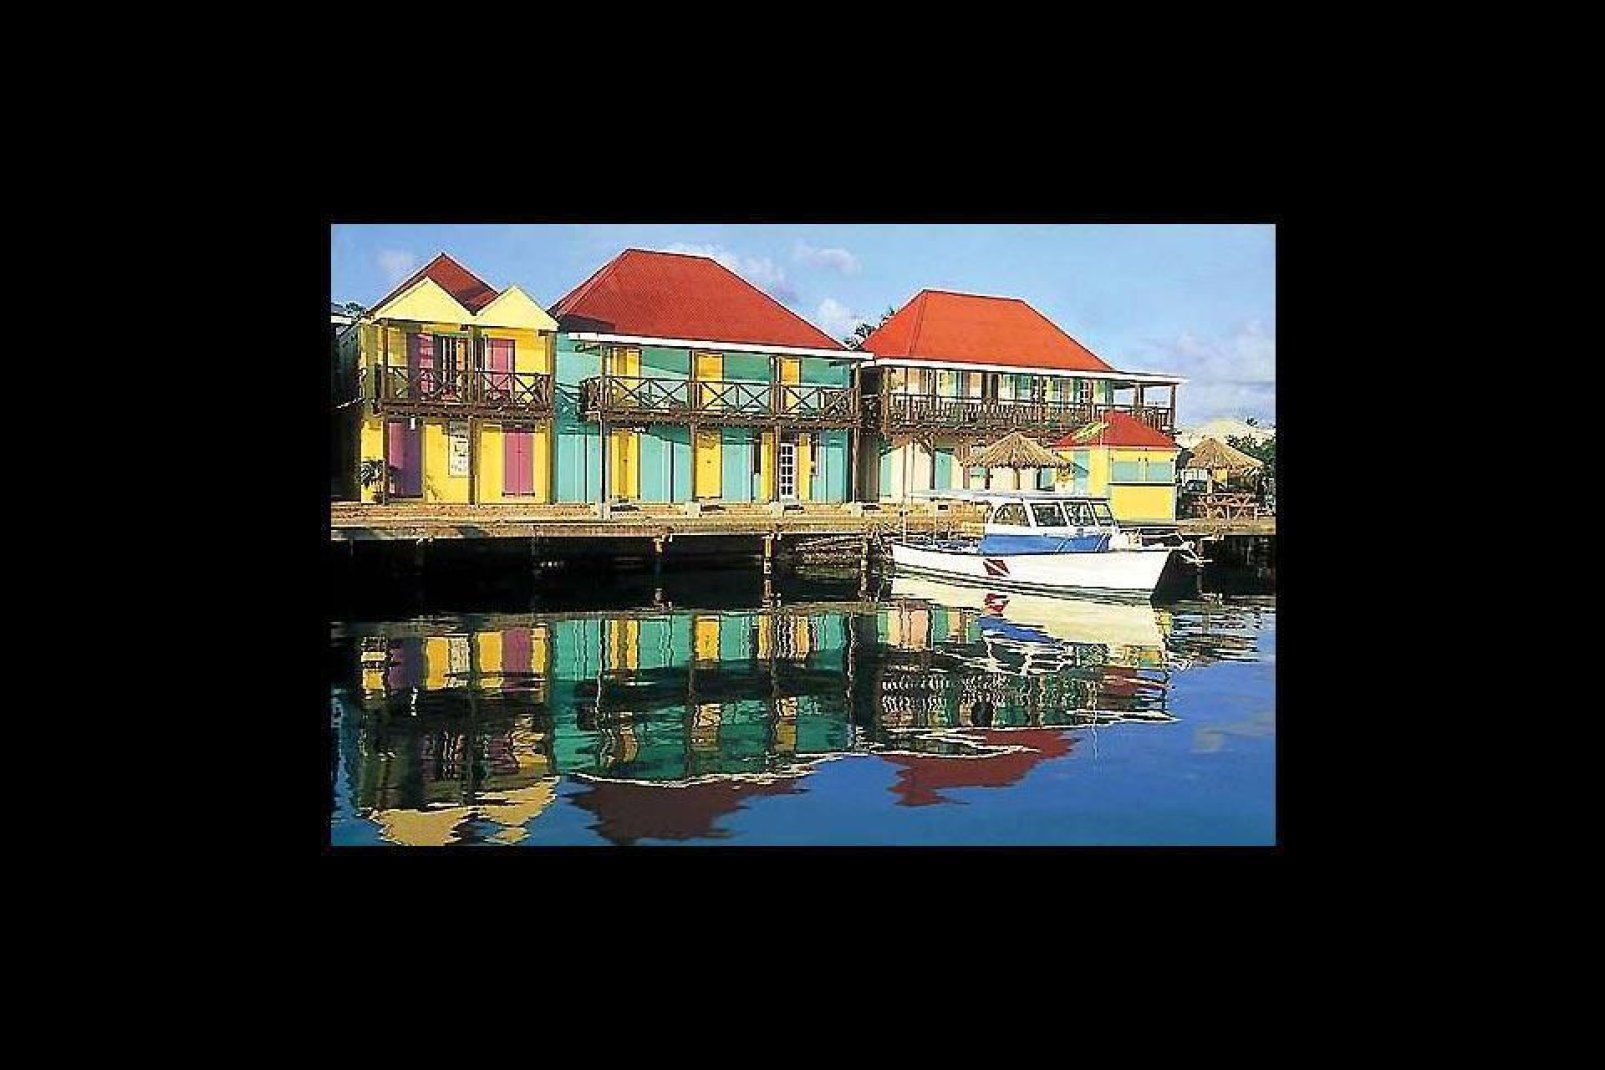 La ville qui donne sur la plus grande baie de l'île a conservé une architecture coloniale avec des maisons en bois aux couleurs pastel.